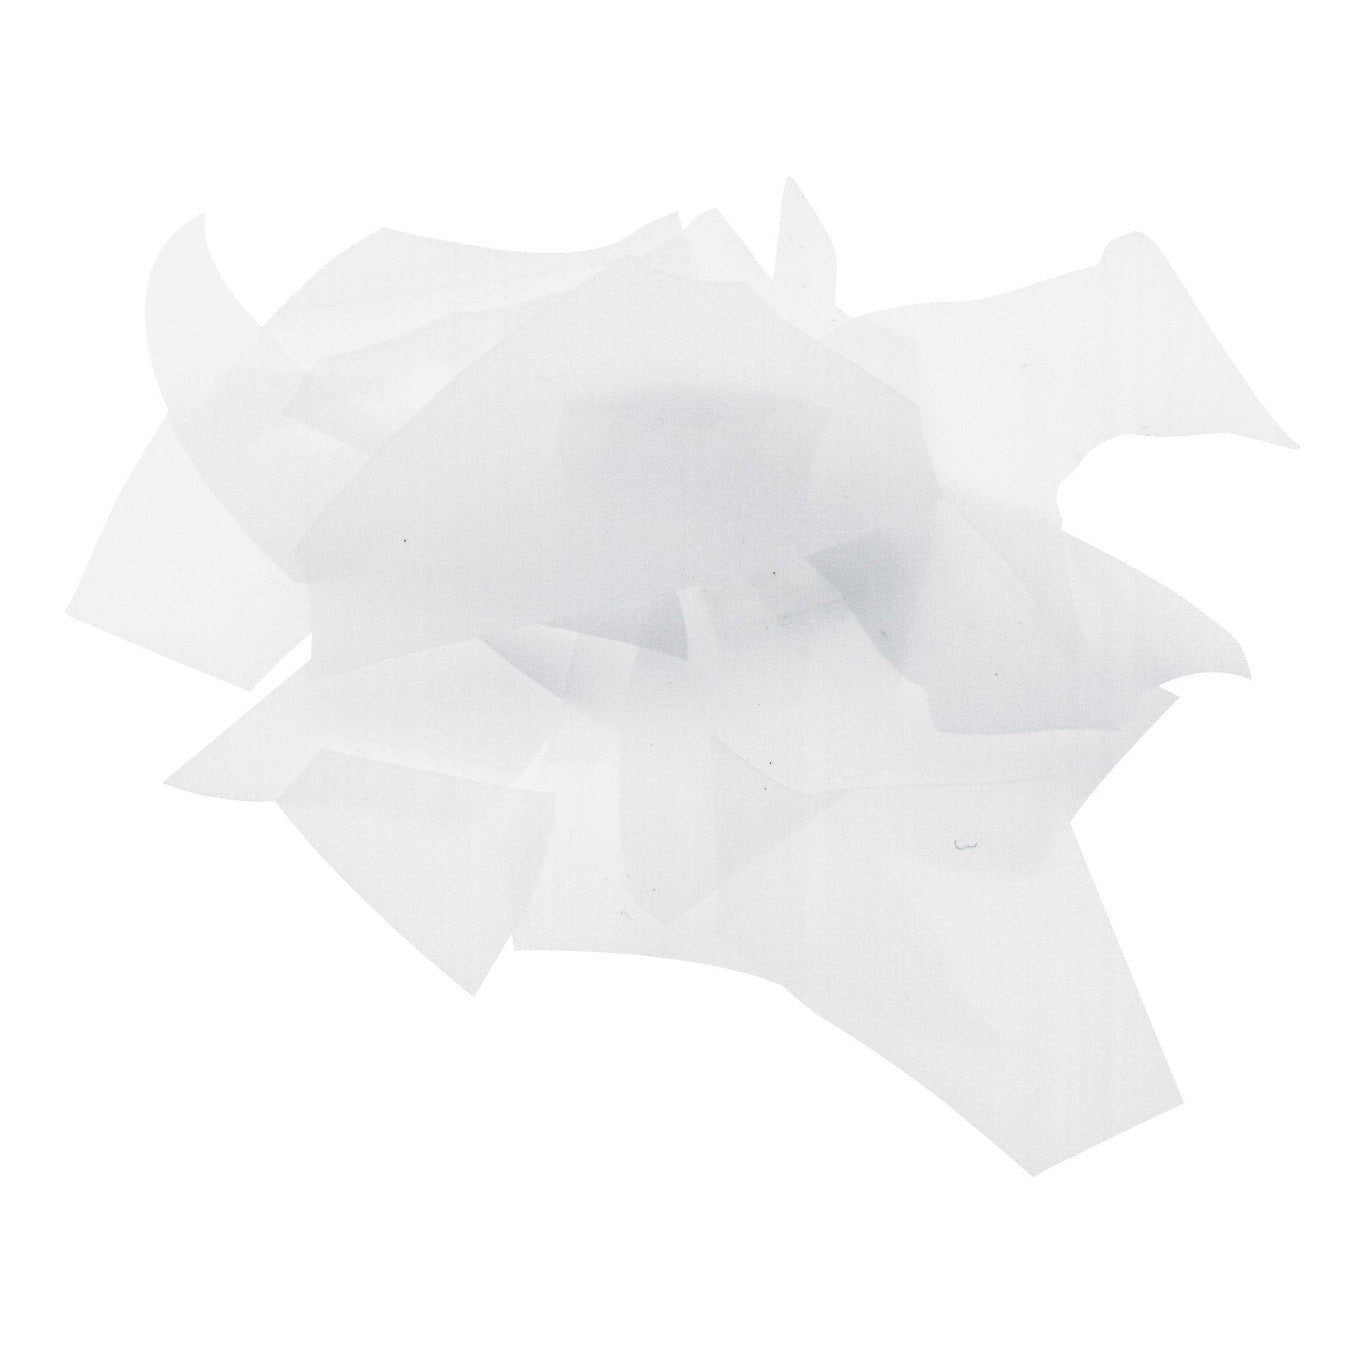 White (0113) Confetti 4oz